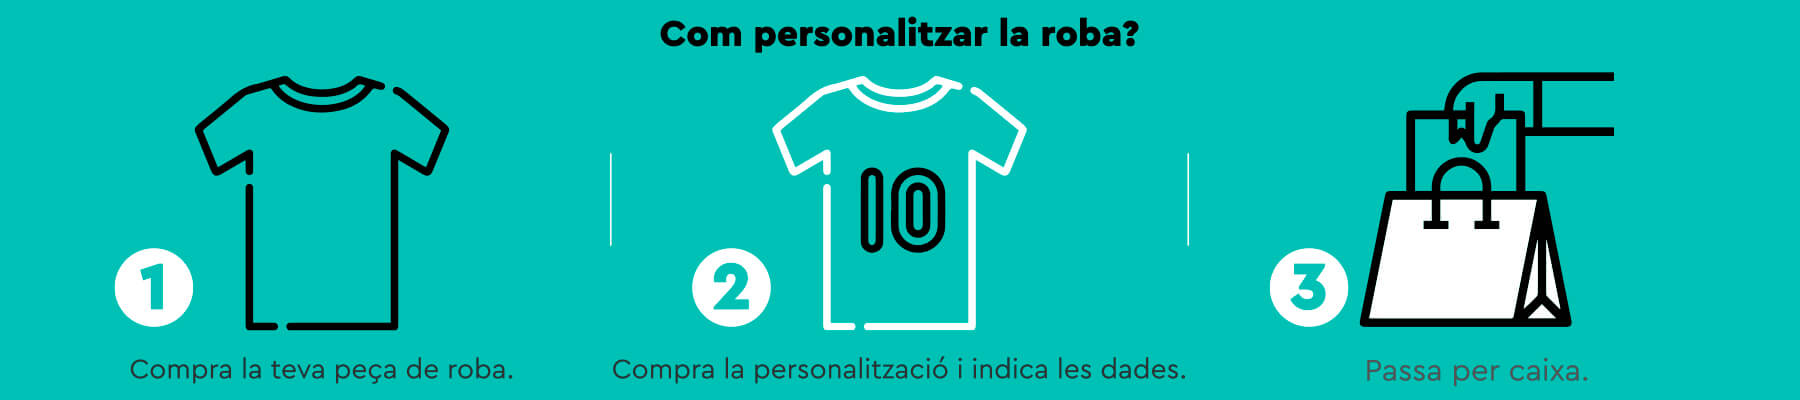 Saps com personalitzar la teva samarreta de futbol de la UE Olot? És molt fàcil. Compra la samarreta que més t'agradi. Compra la personalització i indica les dades. Passa per caixa i llestos!